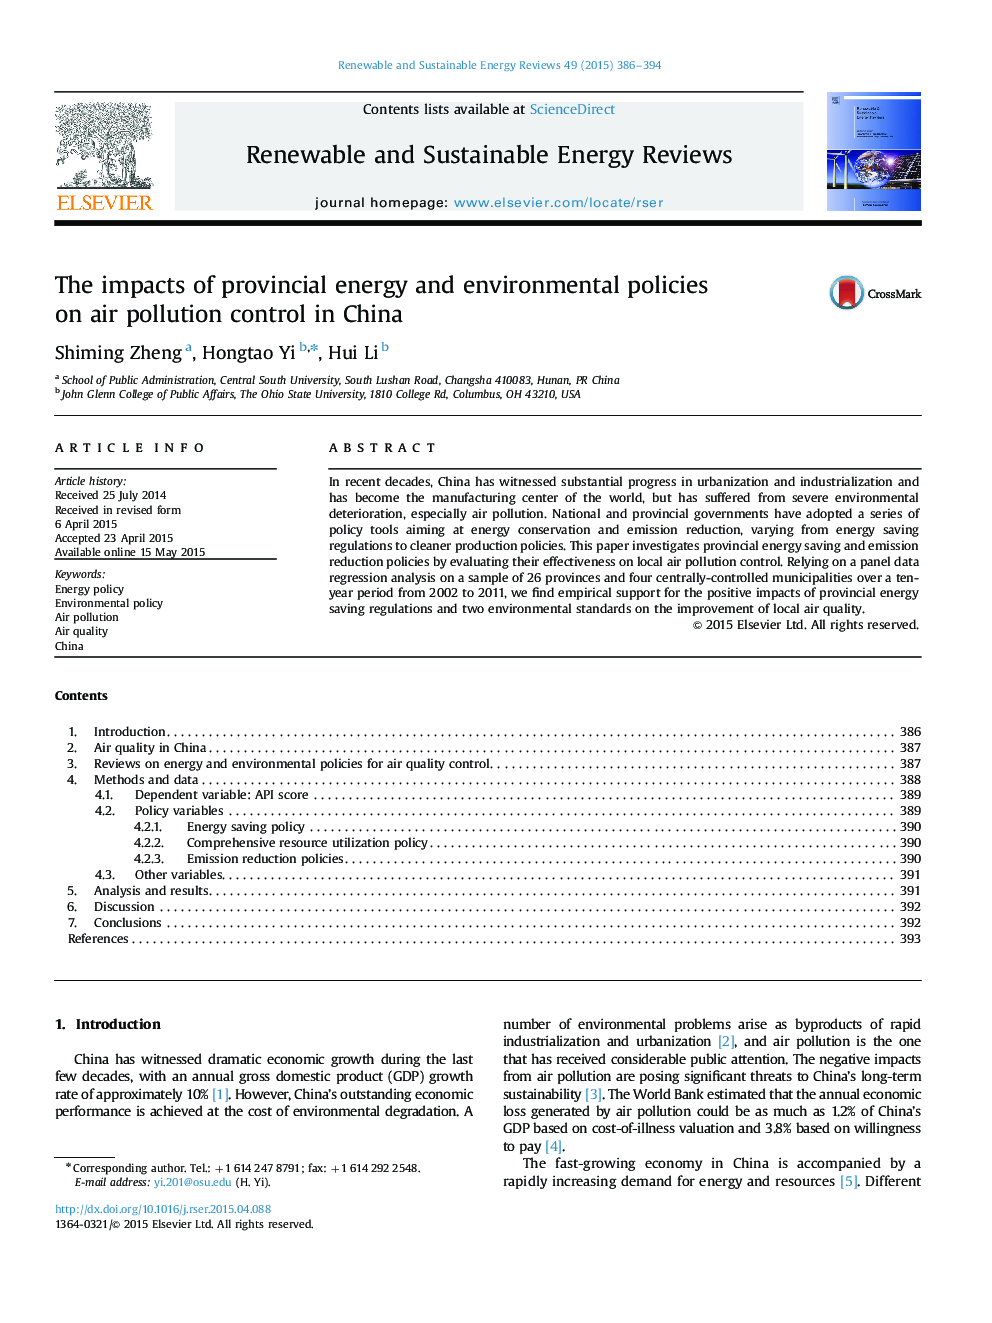 تأثیرات سیاست های انرژی و سیاست های والیتی در کنترل آلودگی هوا در چین 